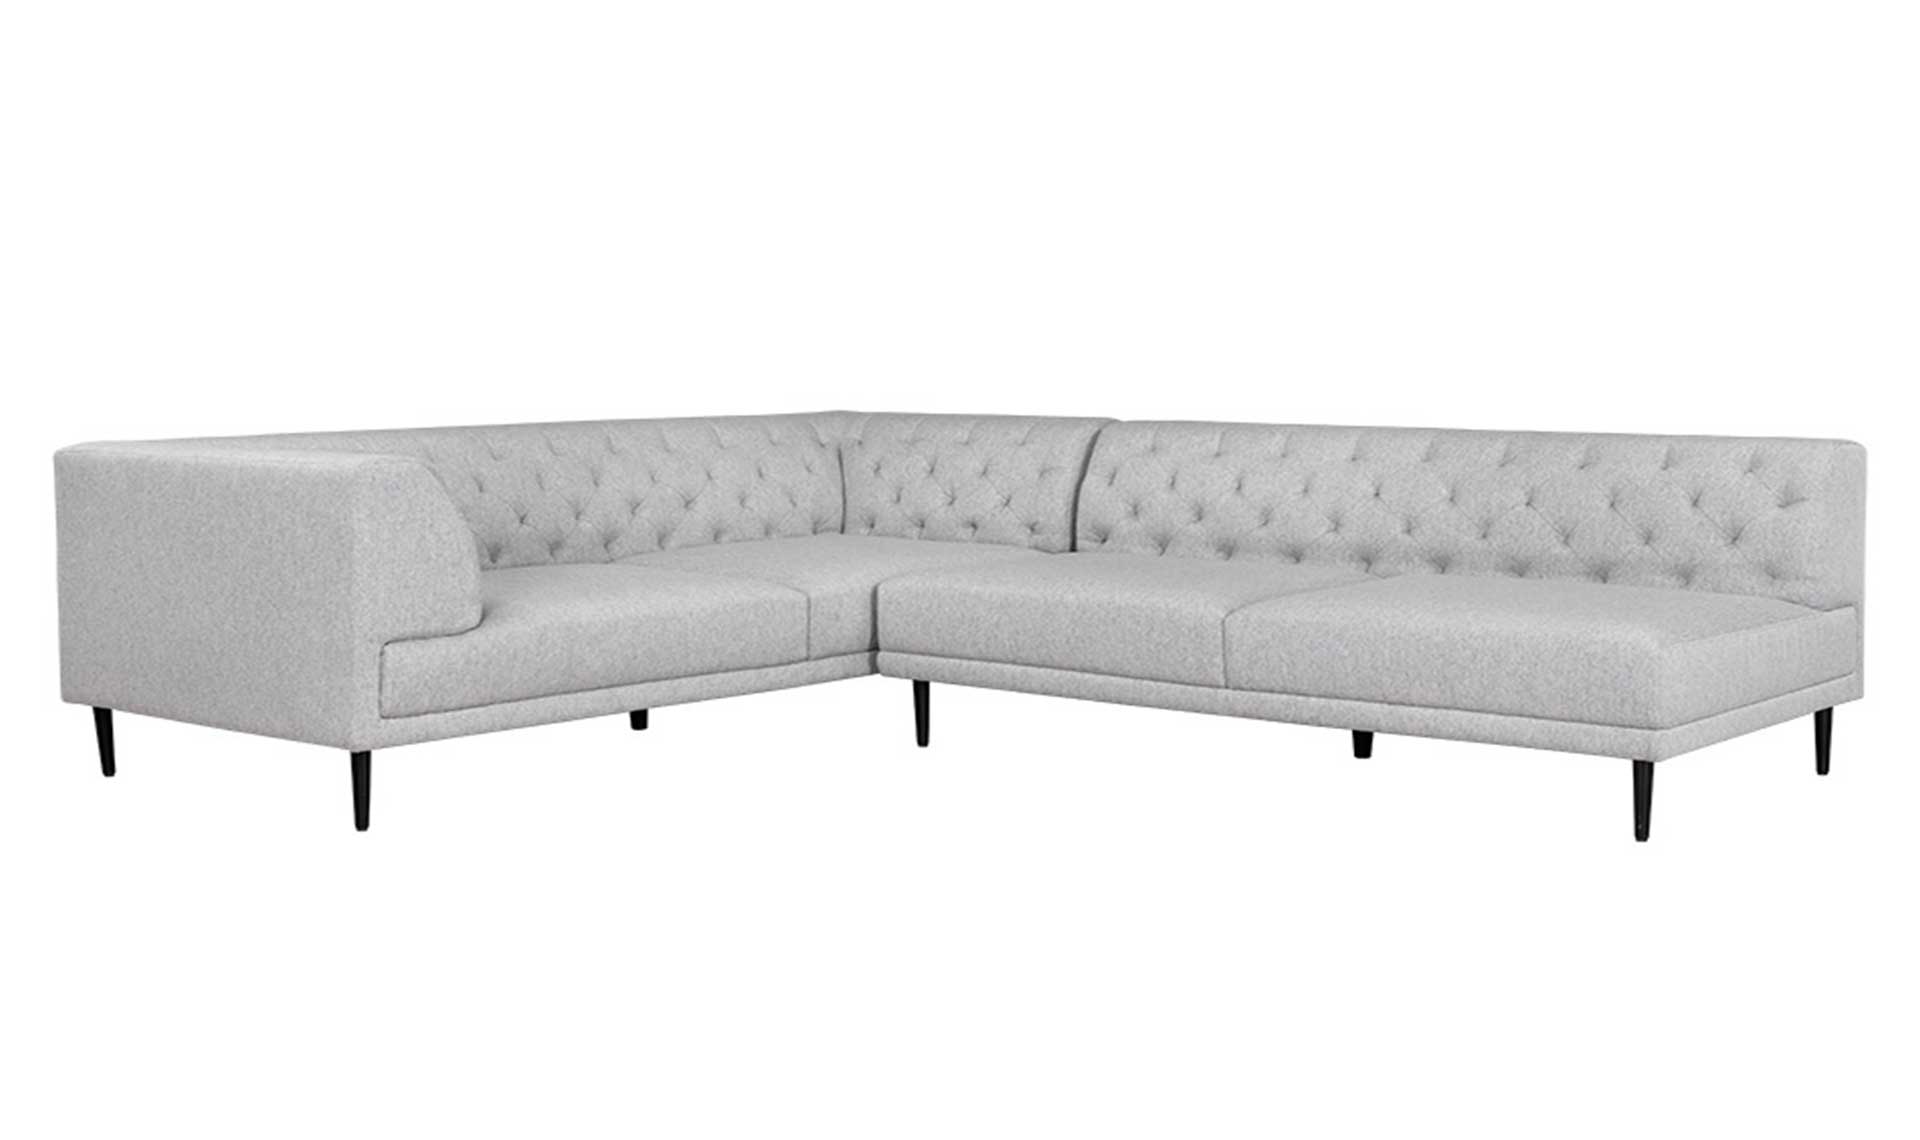 delmar armless sofa trounce aluminum full 6